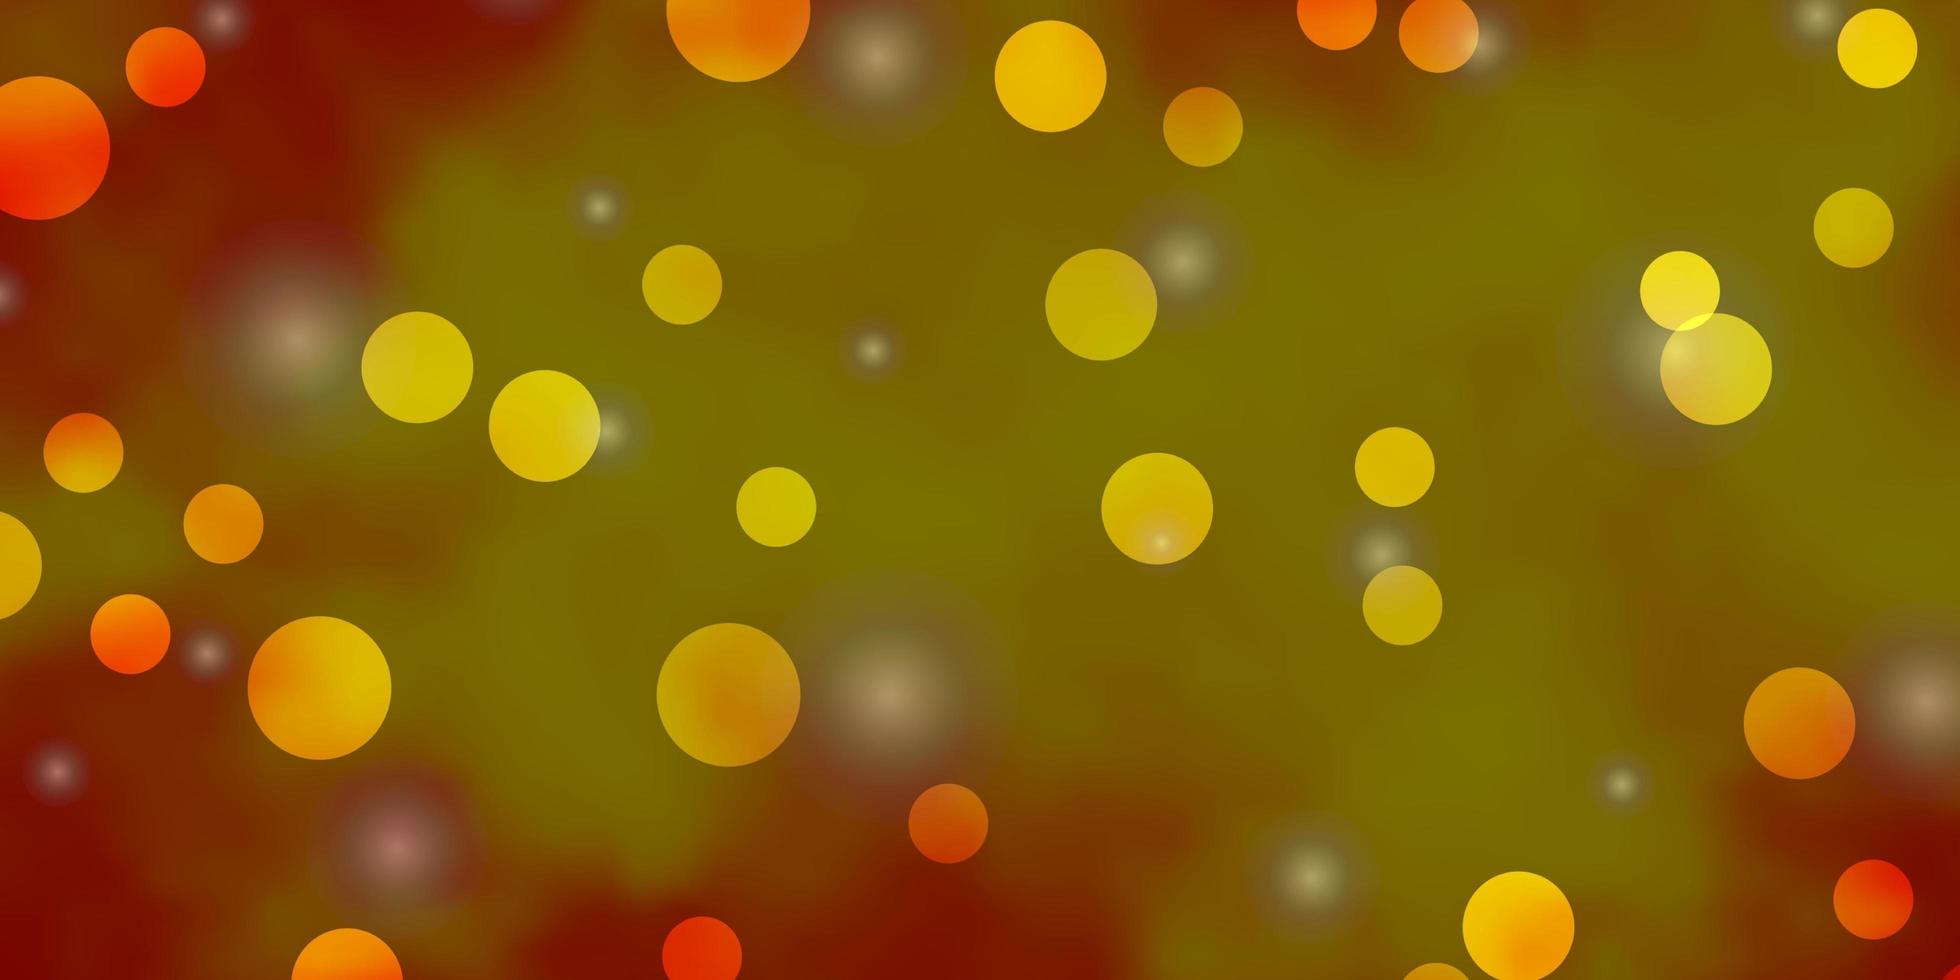 padrão de vetor laranja claro com círculos, estrelas.